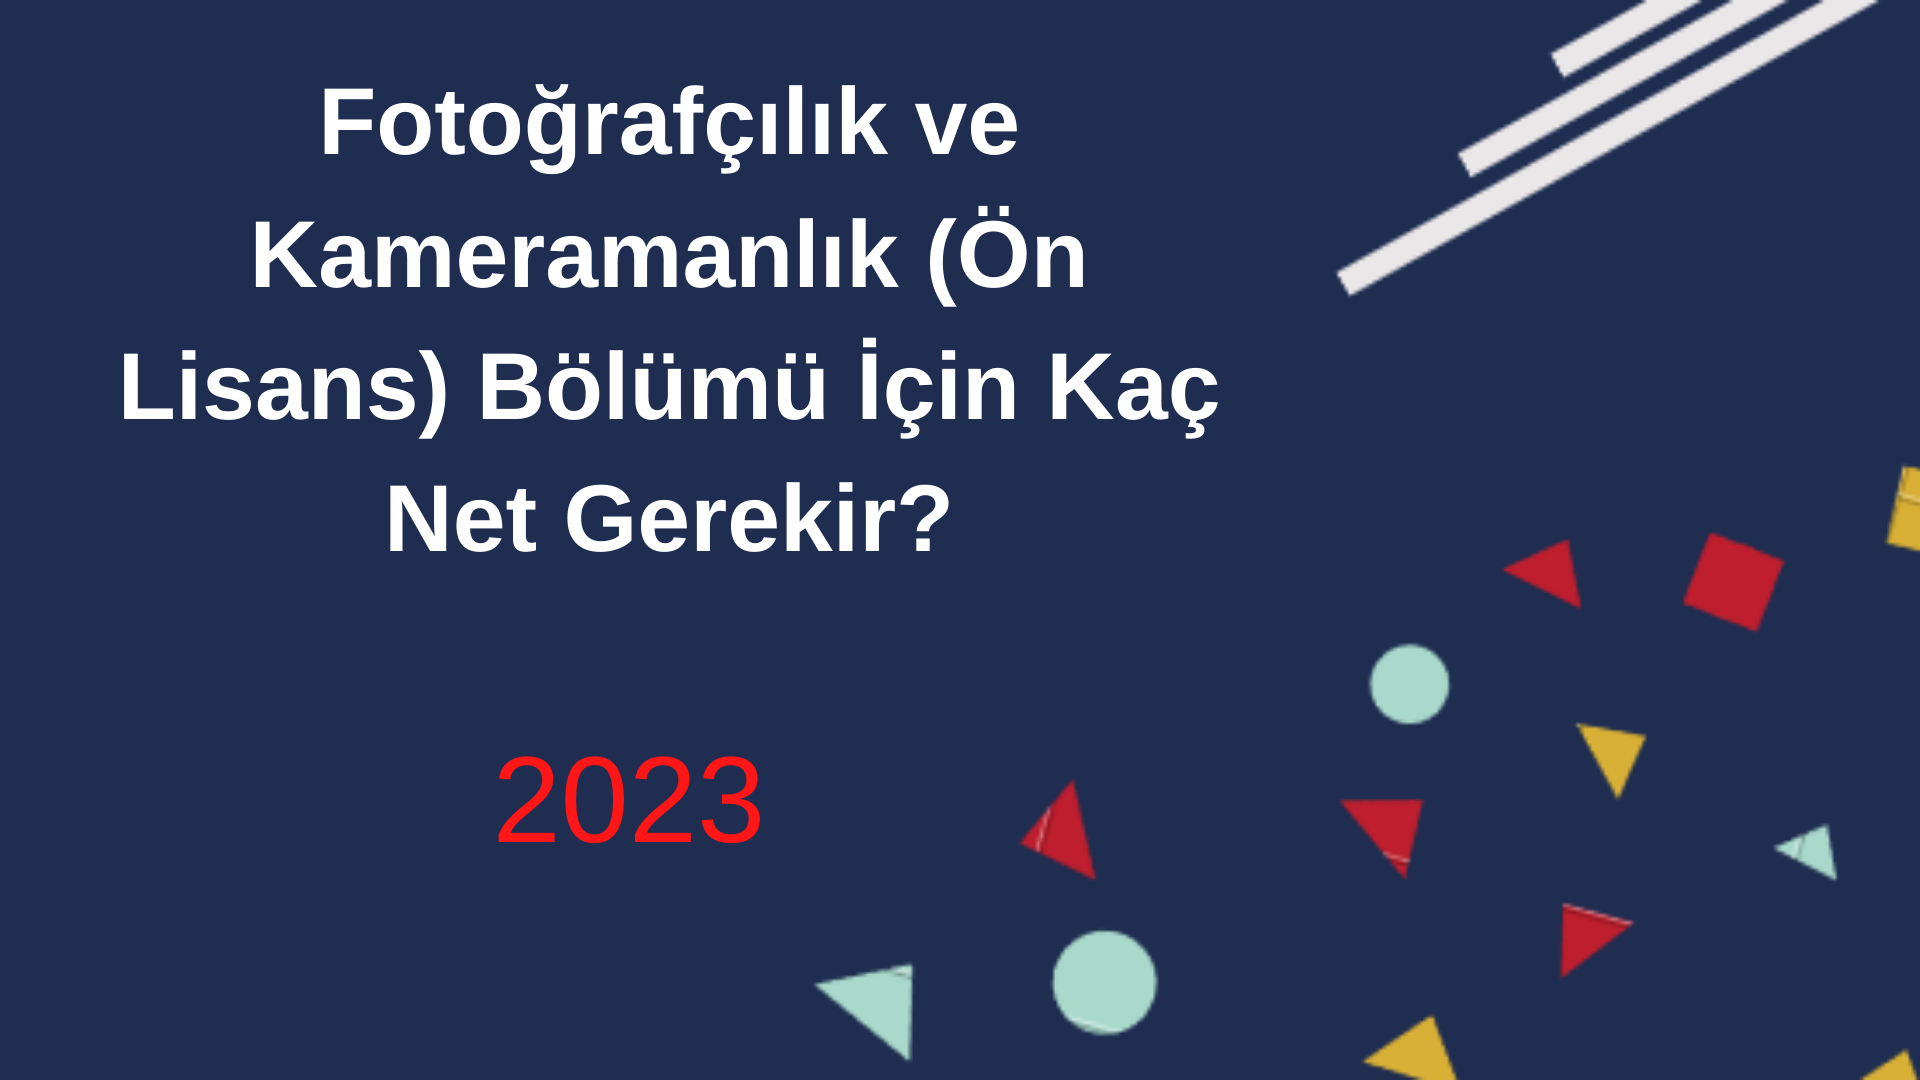  Fotoğrafçılık ve Kameramanlık Bölümü İçin Kaç Net Gerekir 2023